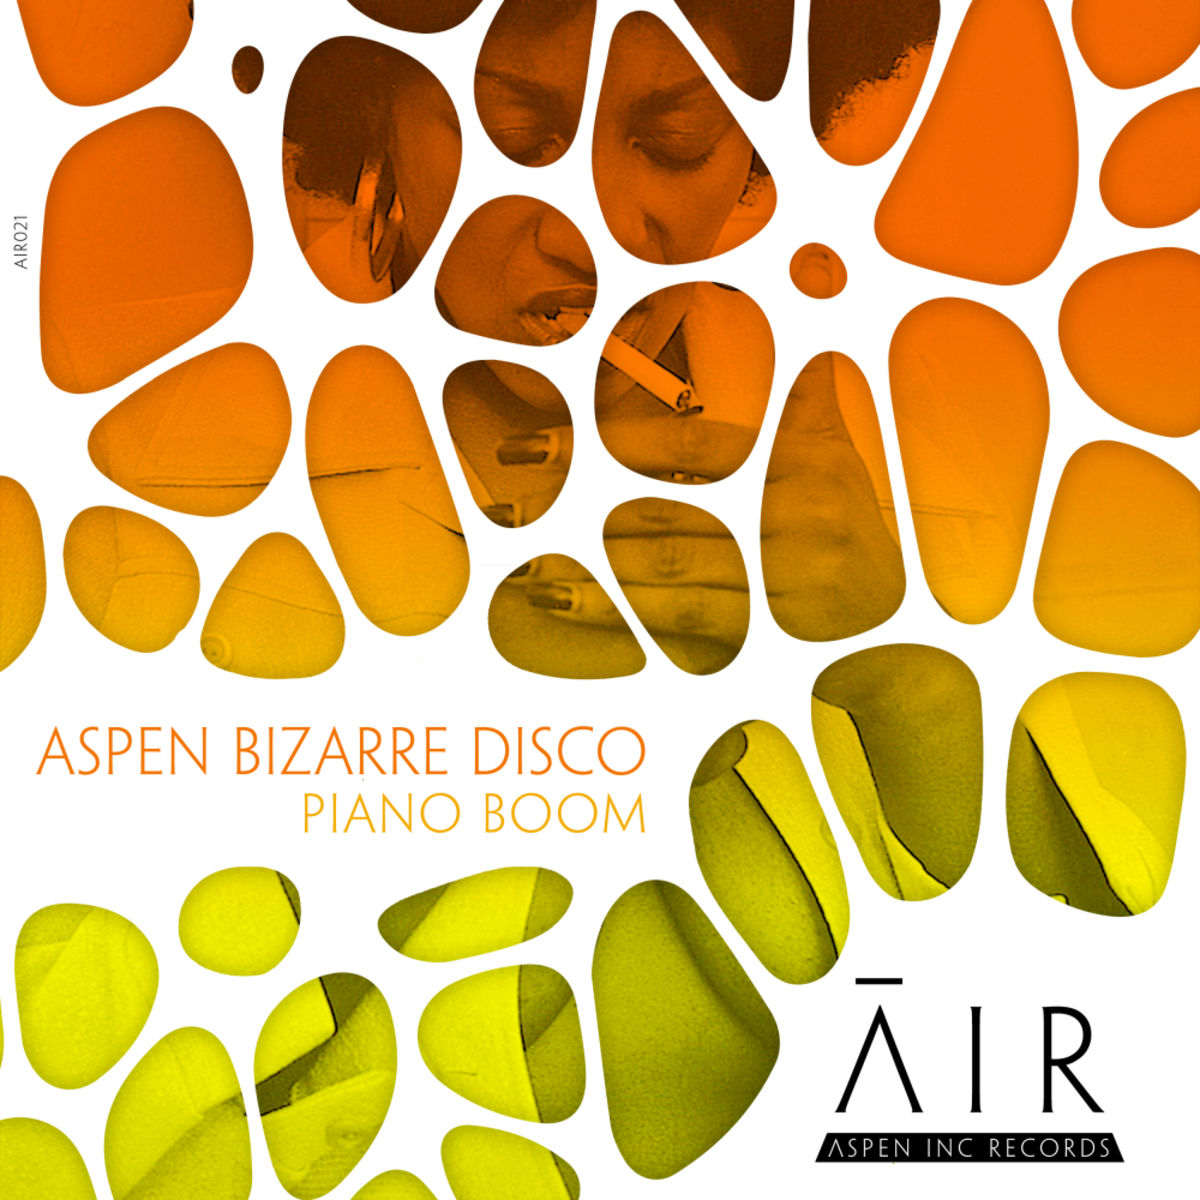 aspen bizarre disco - Piano Boom / Aspen Inc Records